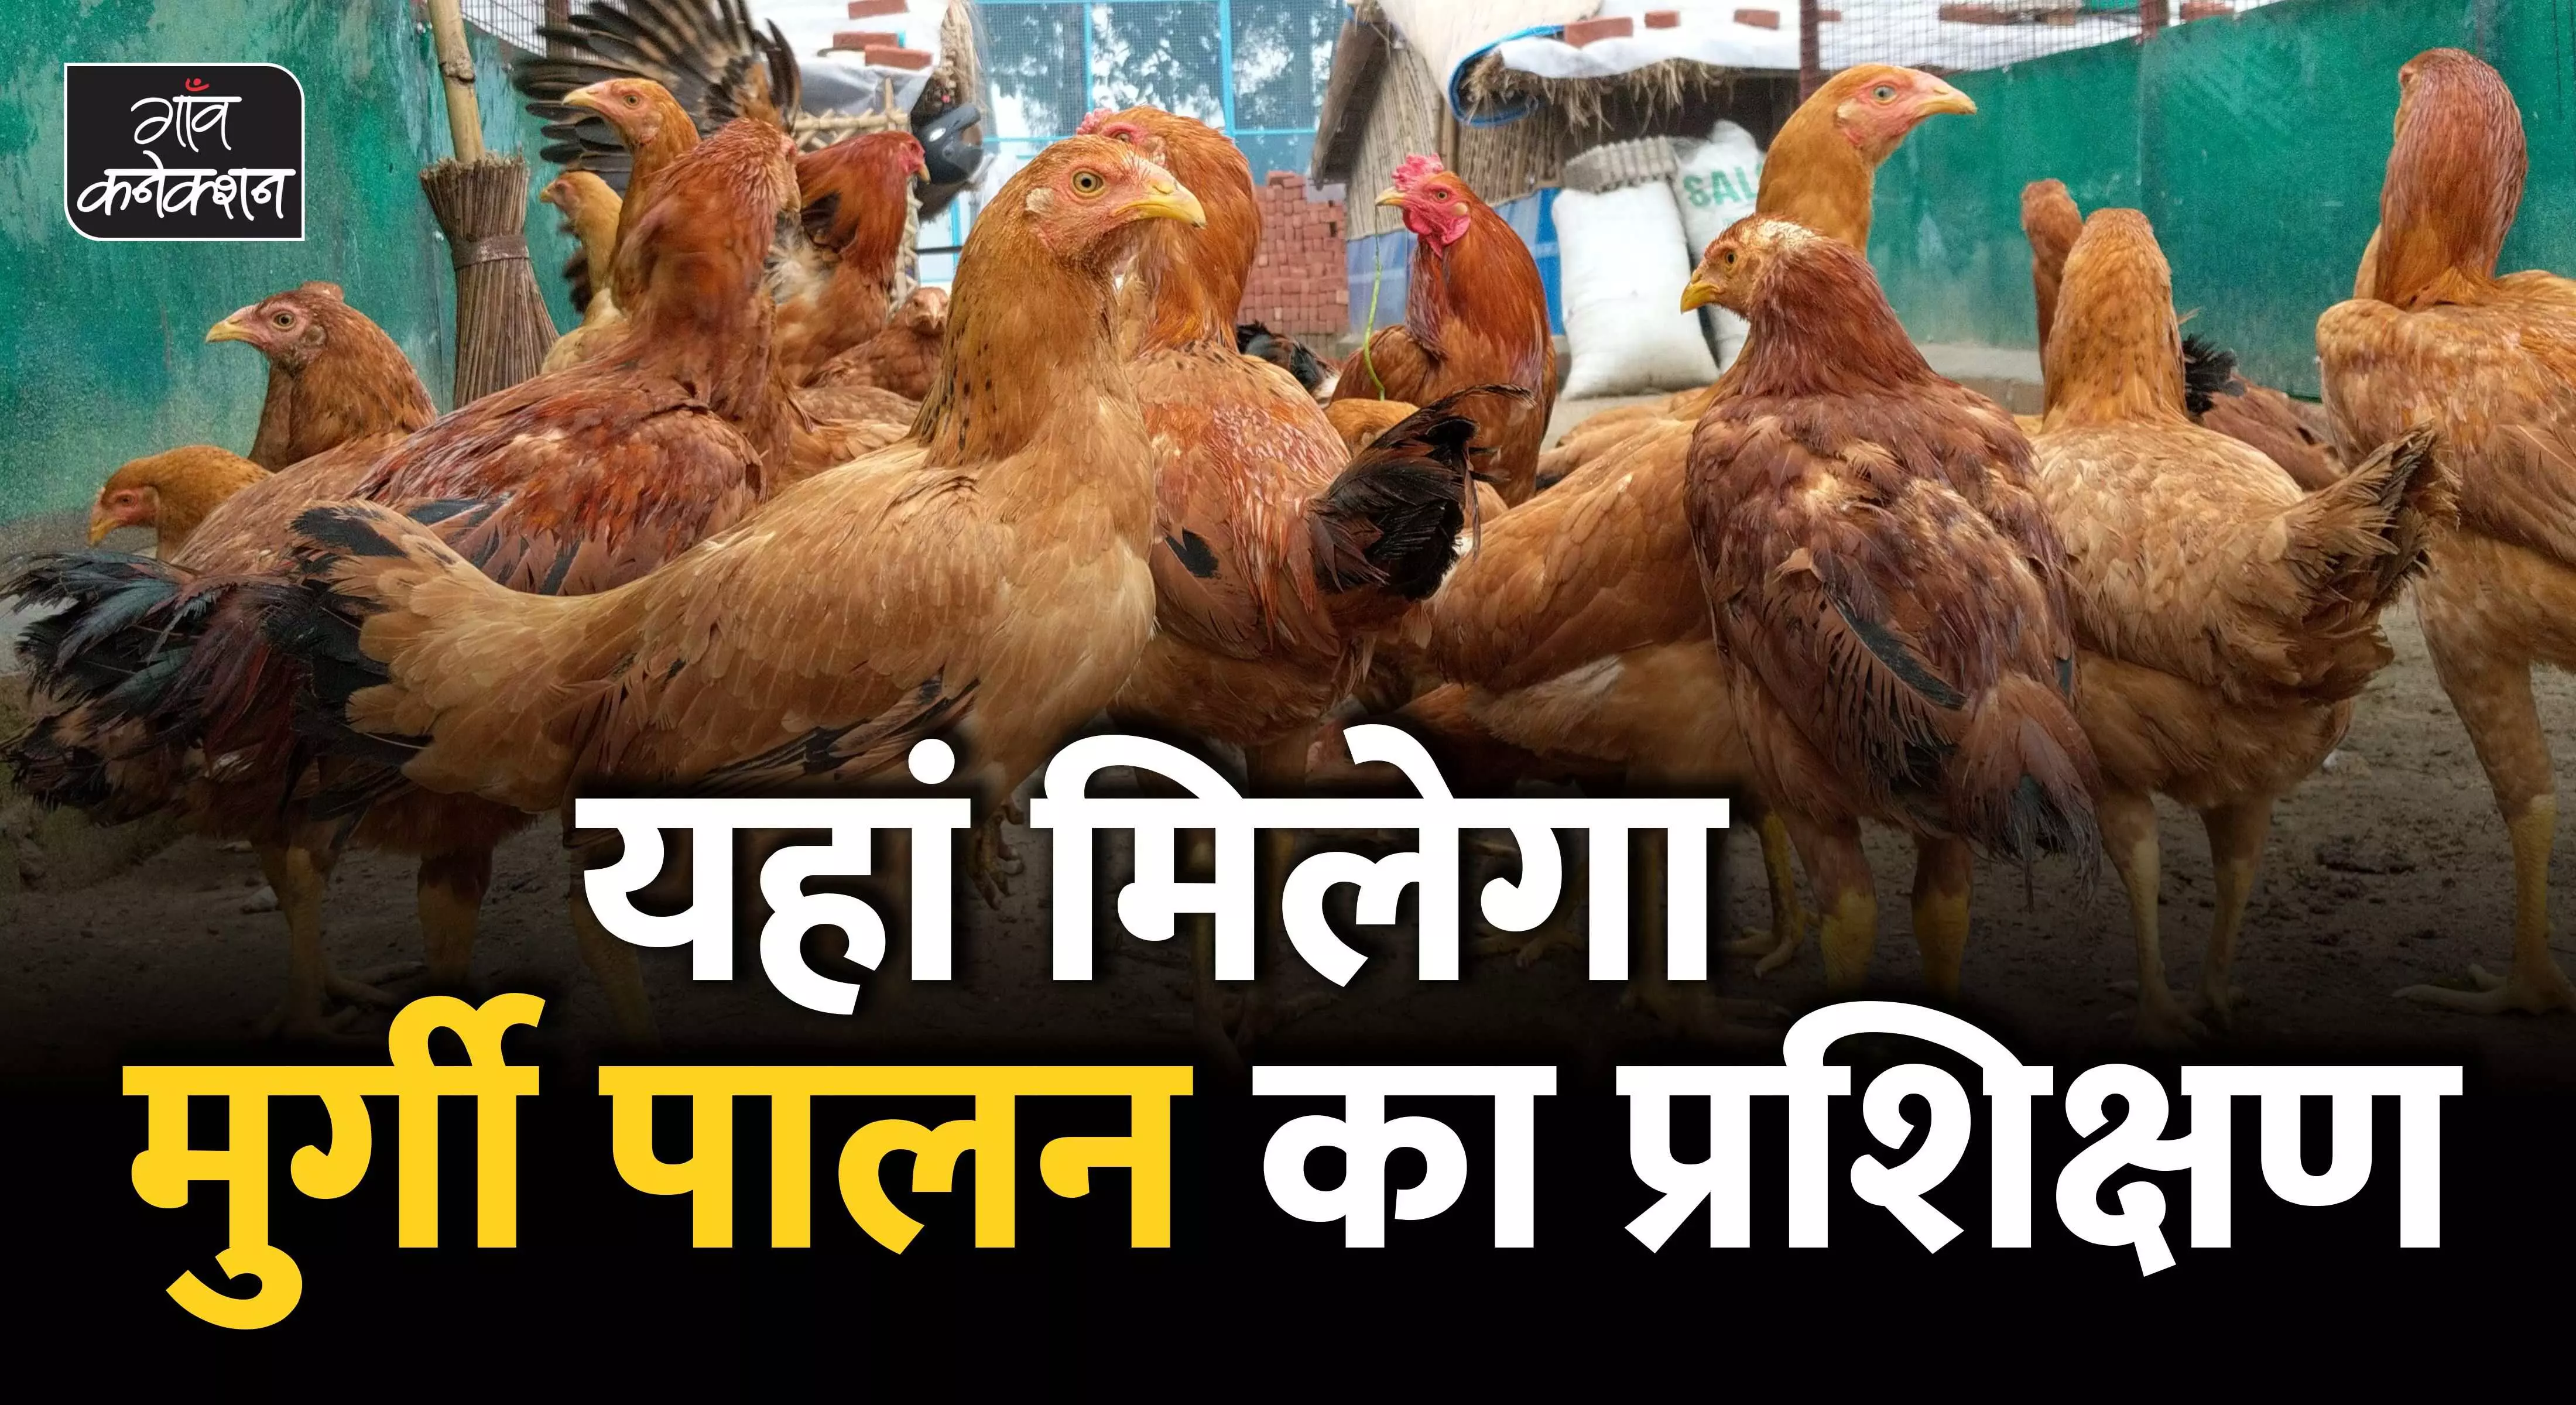 पोल्ट्री व्यवसाय शुरू करने वालों के लिए बढ़िया मौका, ऑनलाइन ट्रेनिंग लेकर शुरू कर सकते हैं मुर्गी पालन